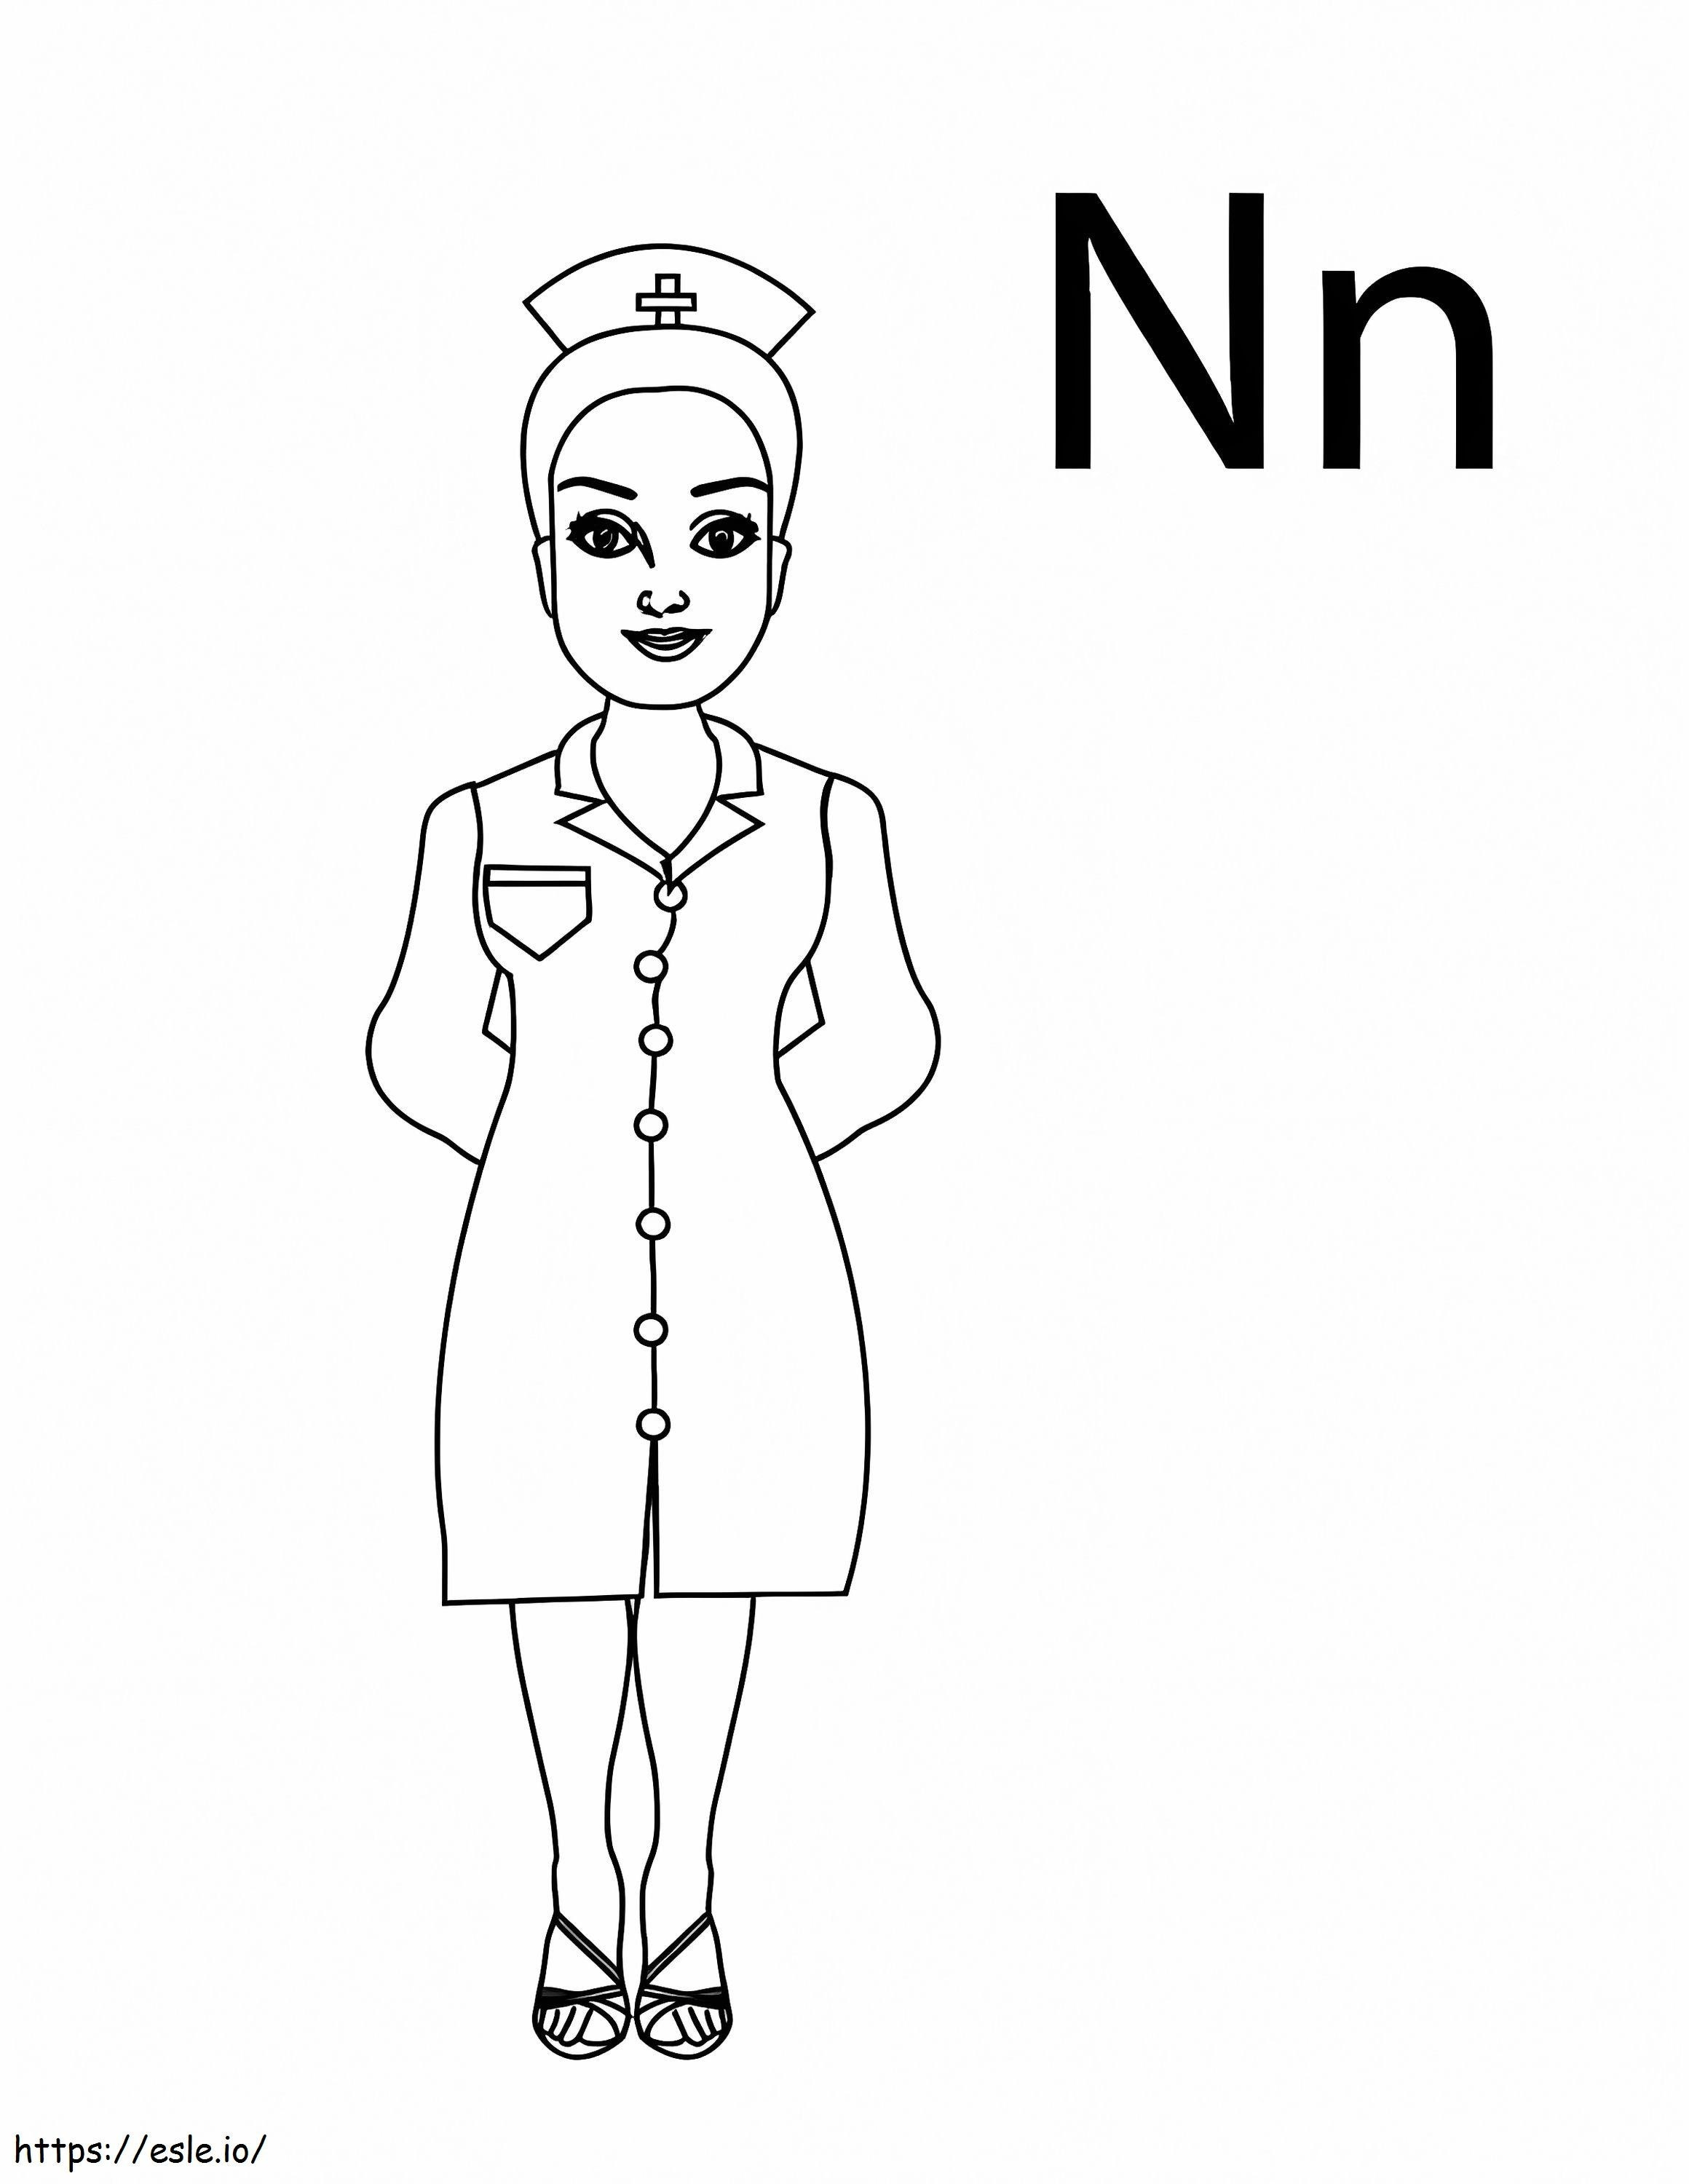 Buchstabe N und Krankenschwester ausmalbilder